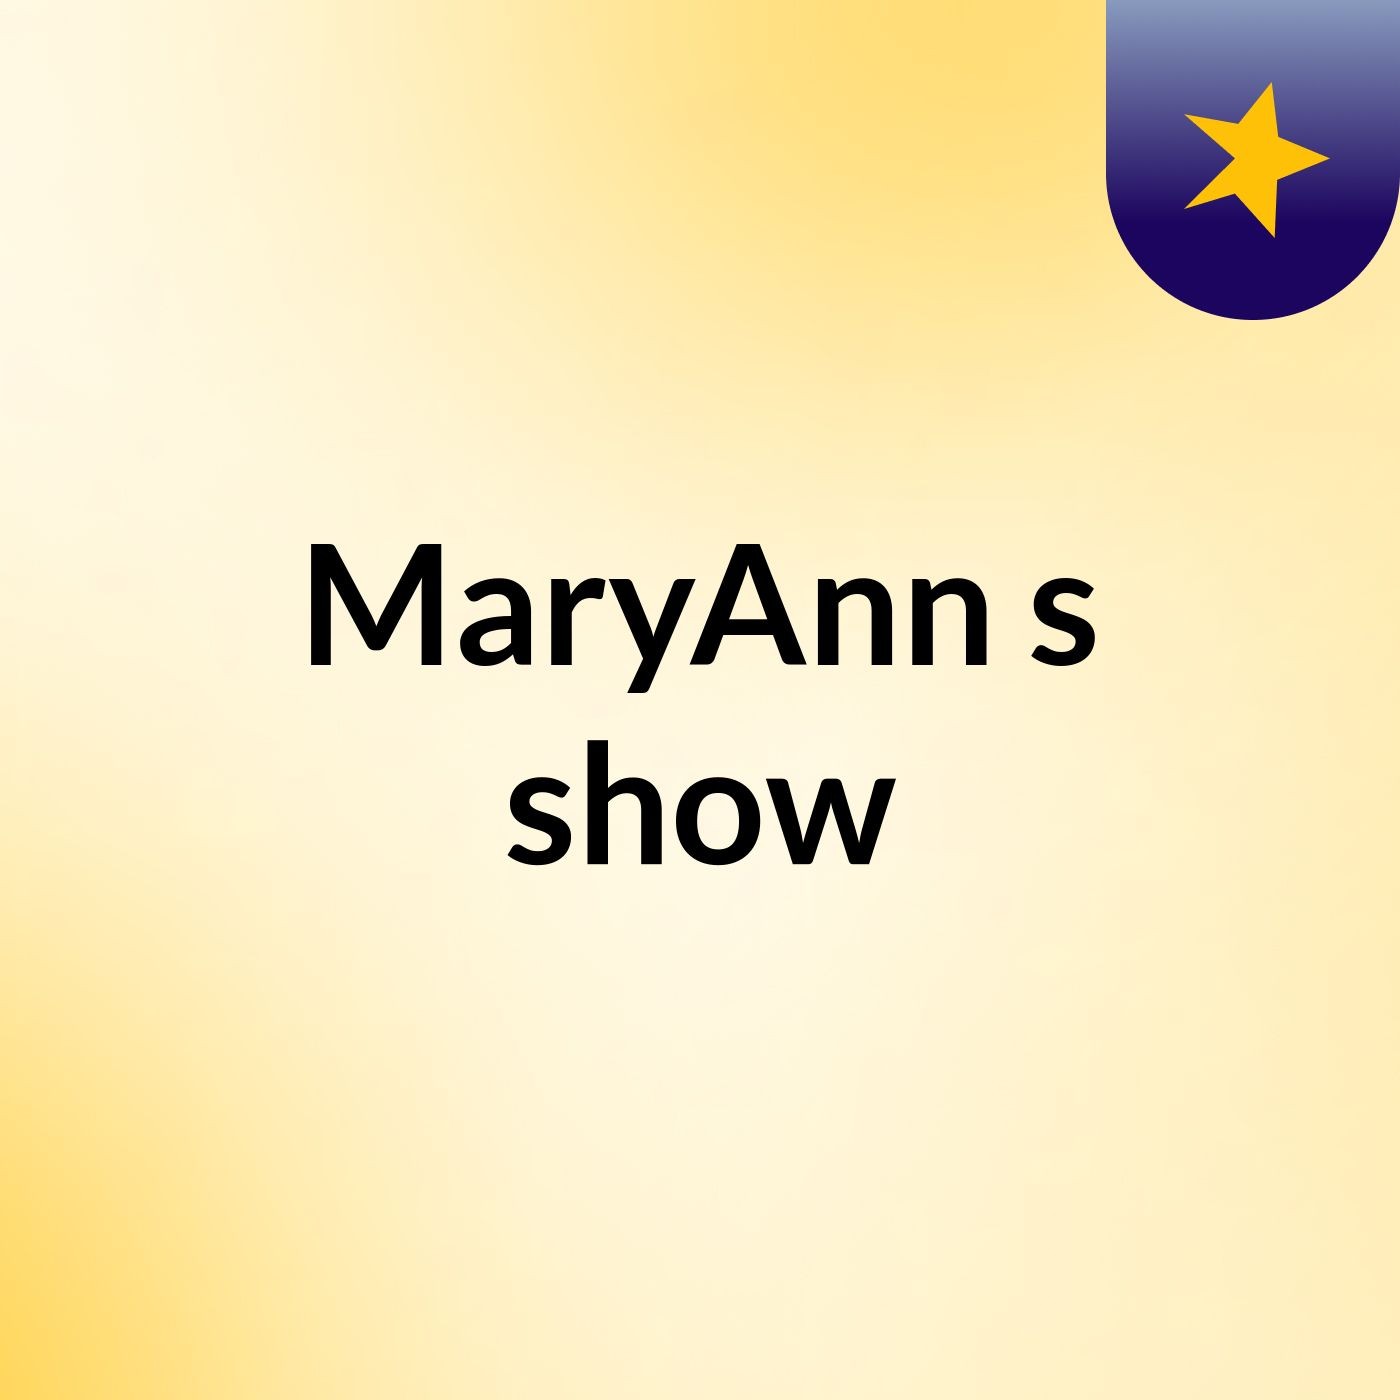 MaryAnn's show